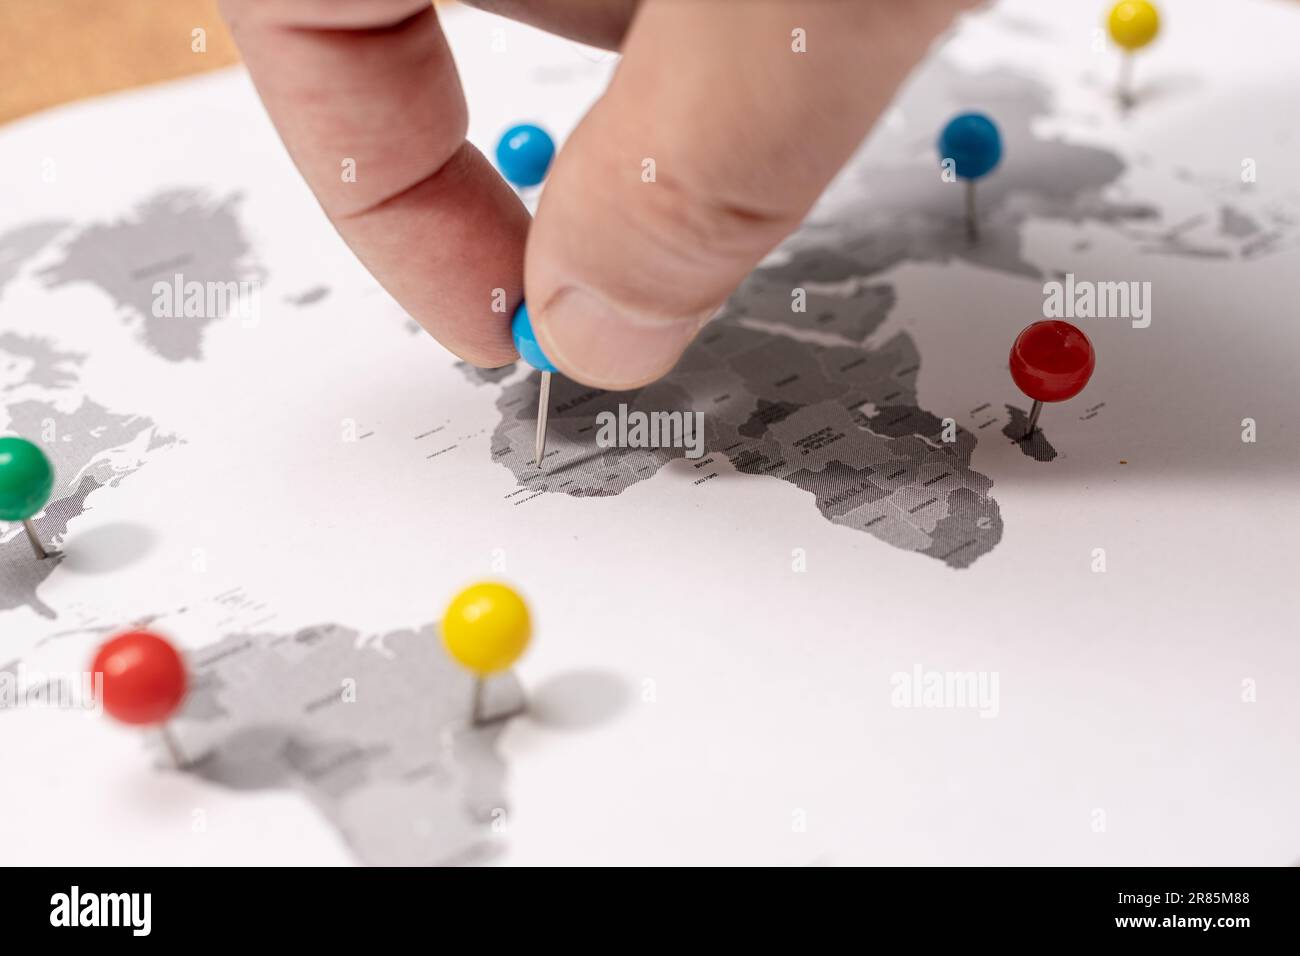 Gros plan de Human Hand pinning sur la carte du monde. Concept de destination de voyage Banque D'Images